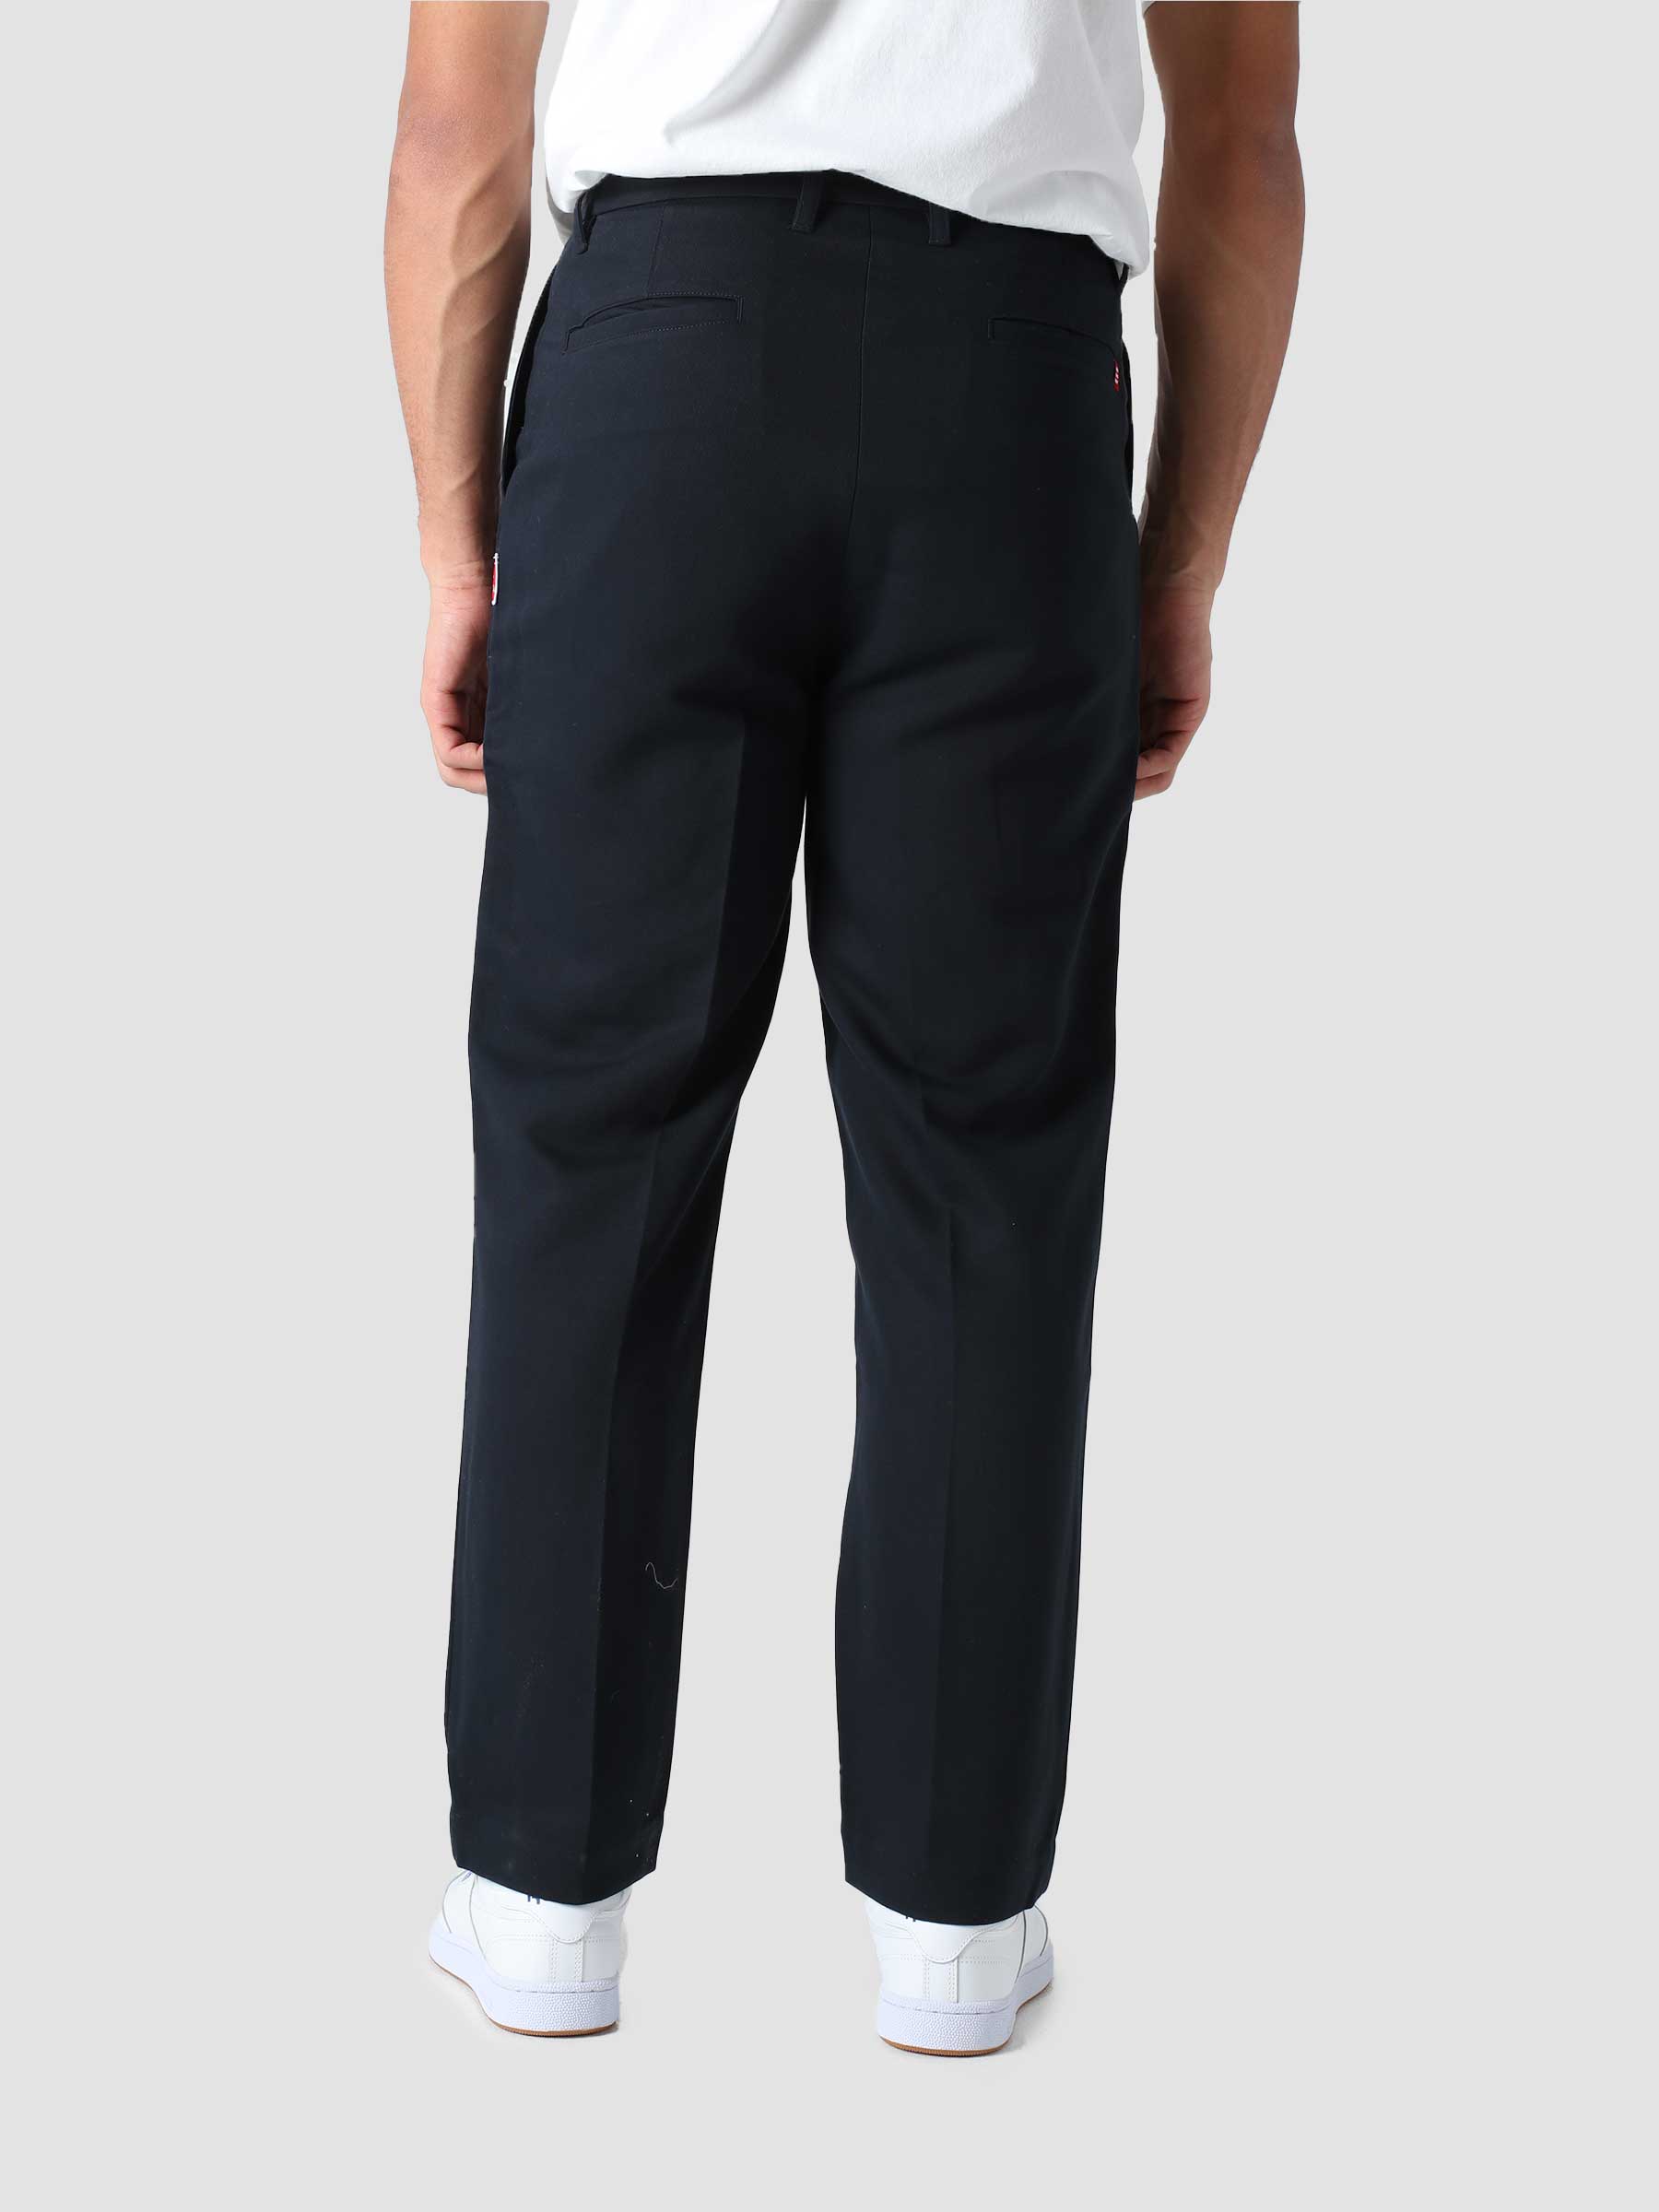 9-Dots Suit Trousers Navy TNO.212.9D.505.600